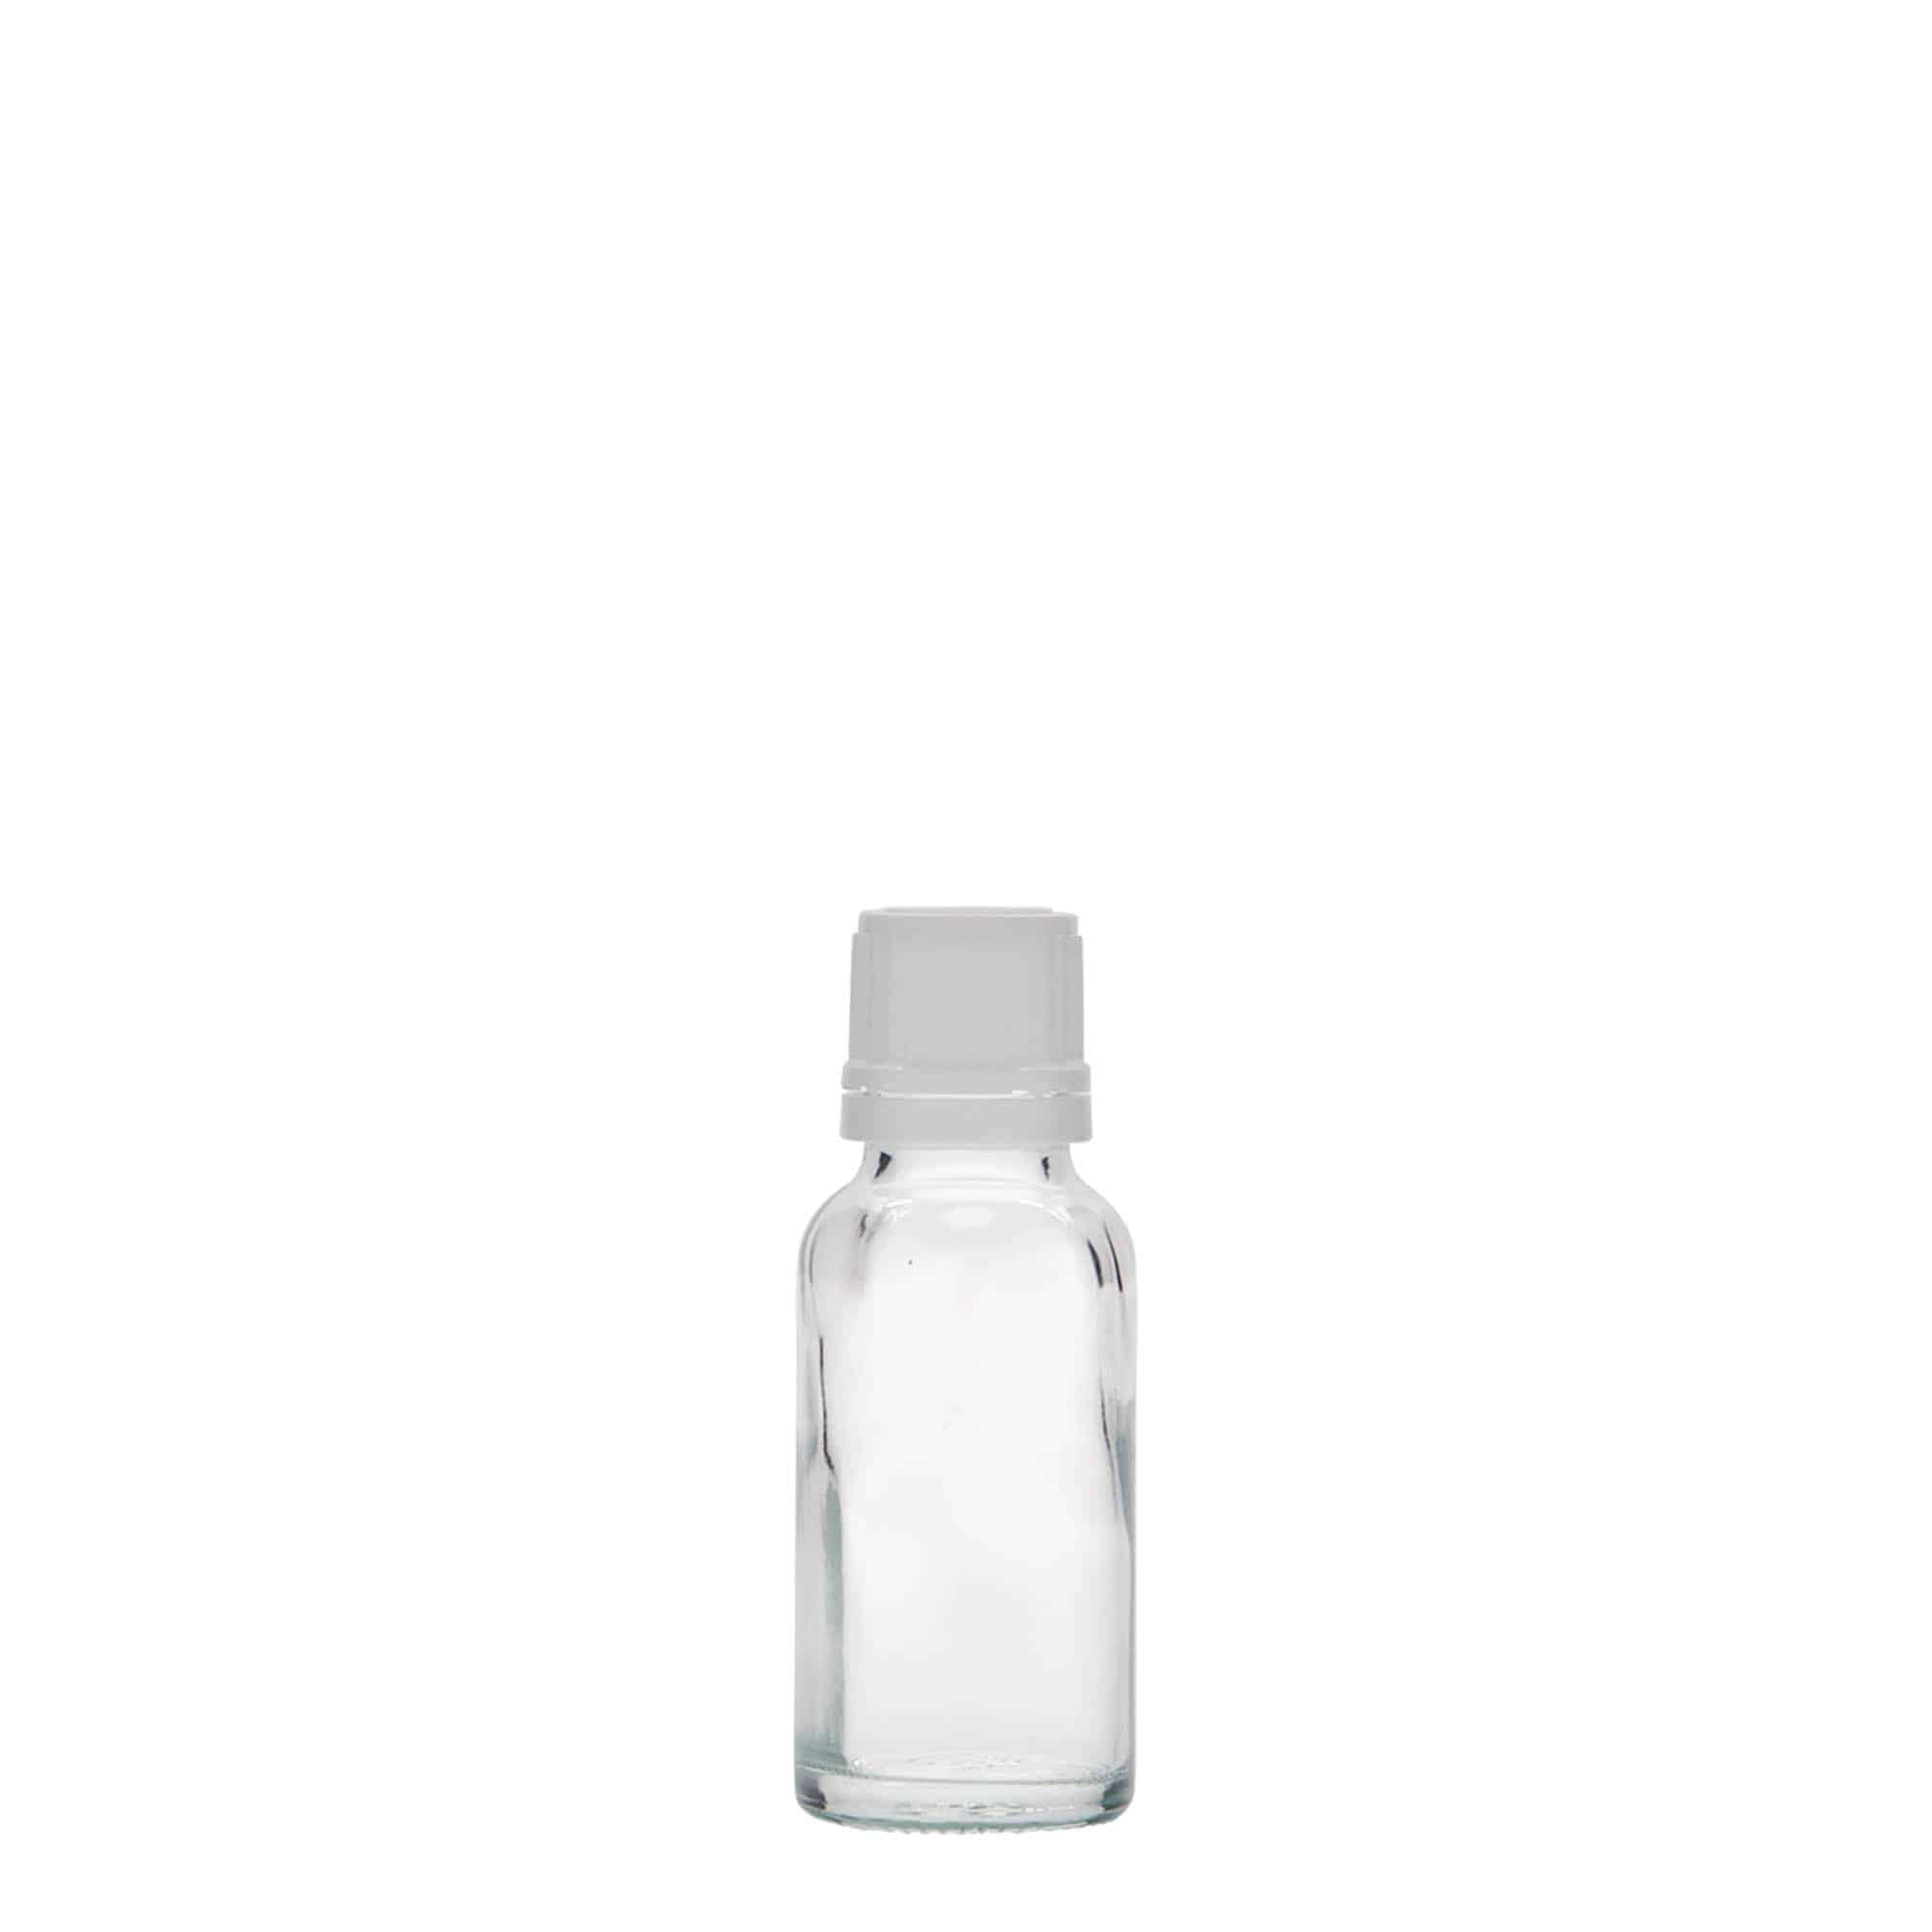 20 ml Flacone farmaceutico, vetro, imboccatura: DIN 18